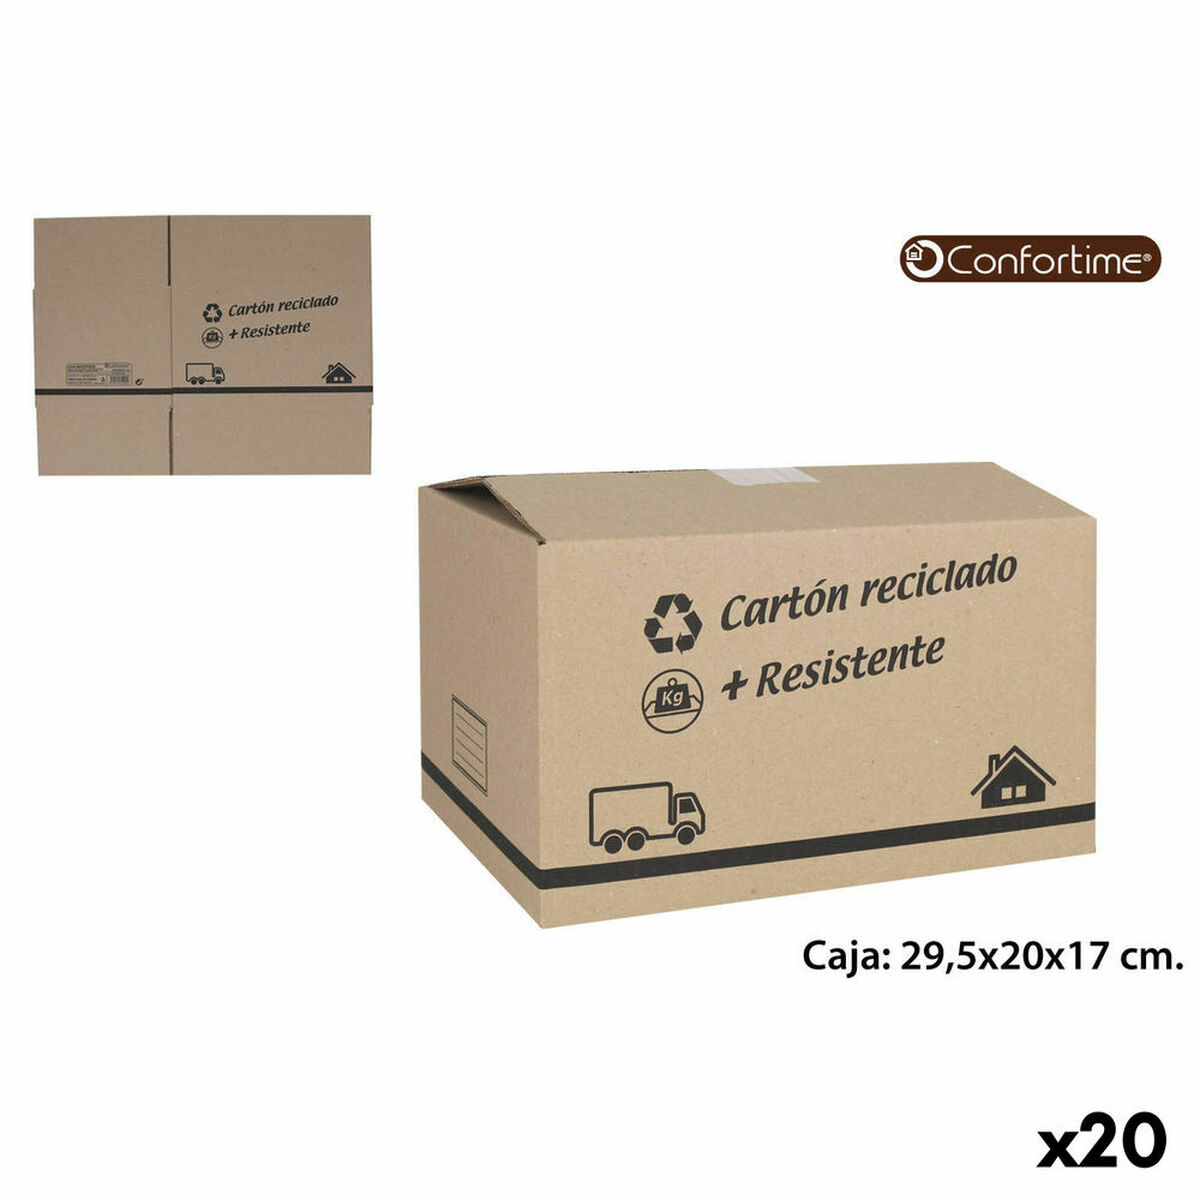 Кутия за Съхранение с Капак Bella Бял 13,9 x 11,4 x 7,2 cm (12 броя) (14 x 11 x 7 cm)